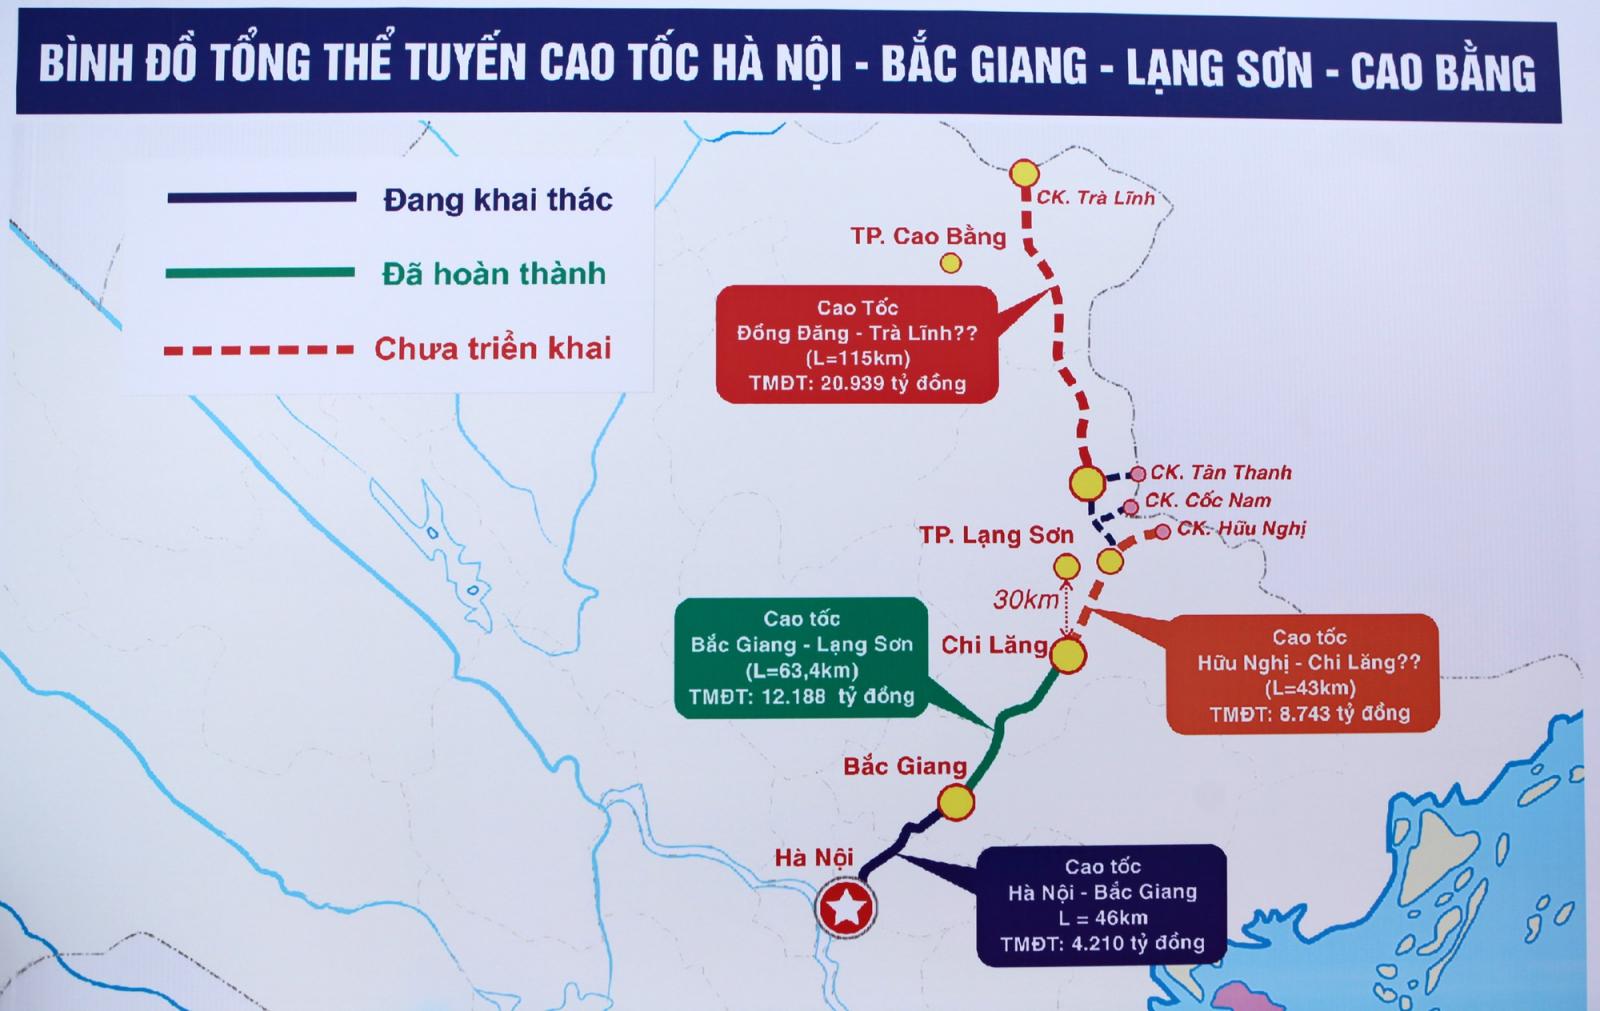 Sơ đồ tổng thể tuyến cao tốc Hà Nội - Bắc Giang - Lạng Sơn - Cao Bằng